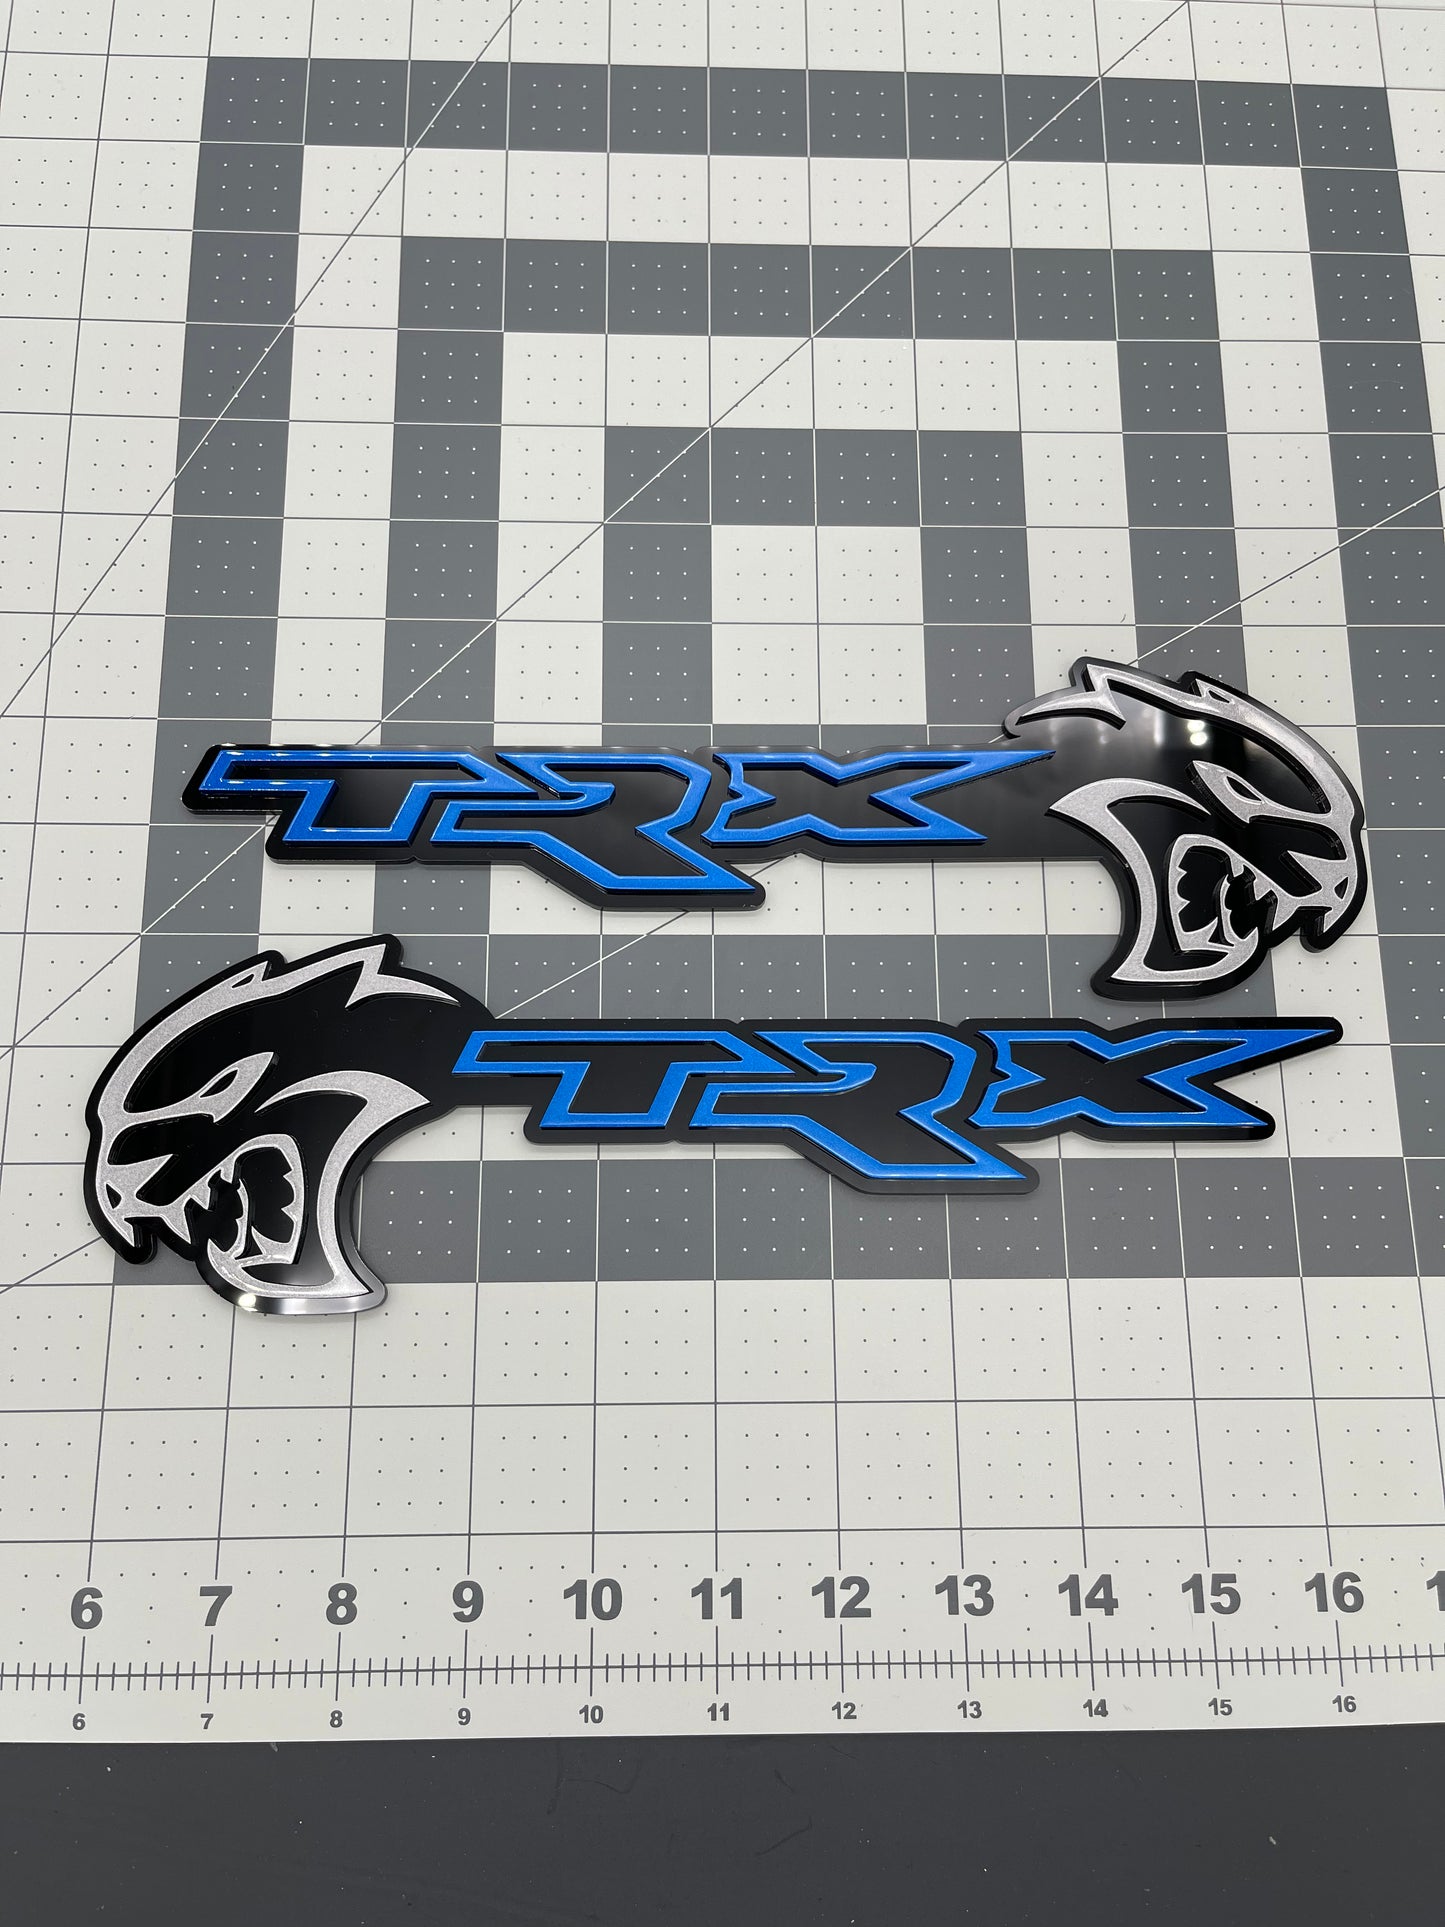 Hellcat TRX combo badge pair